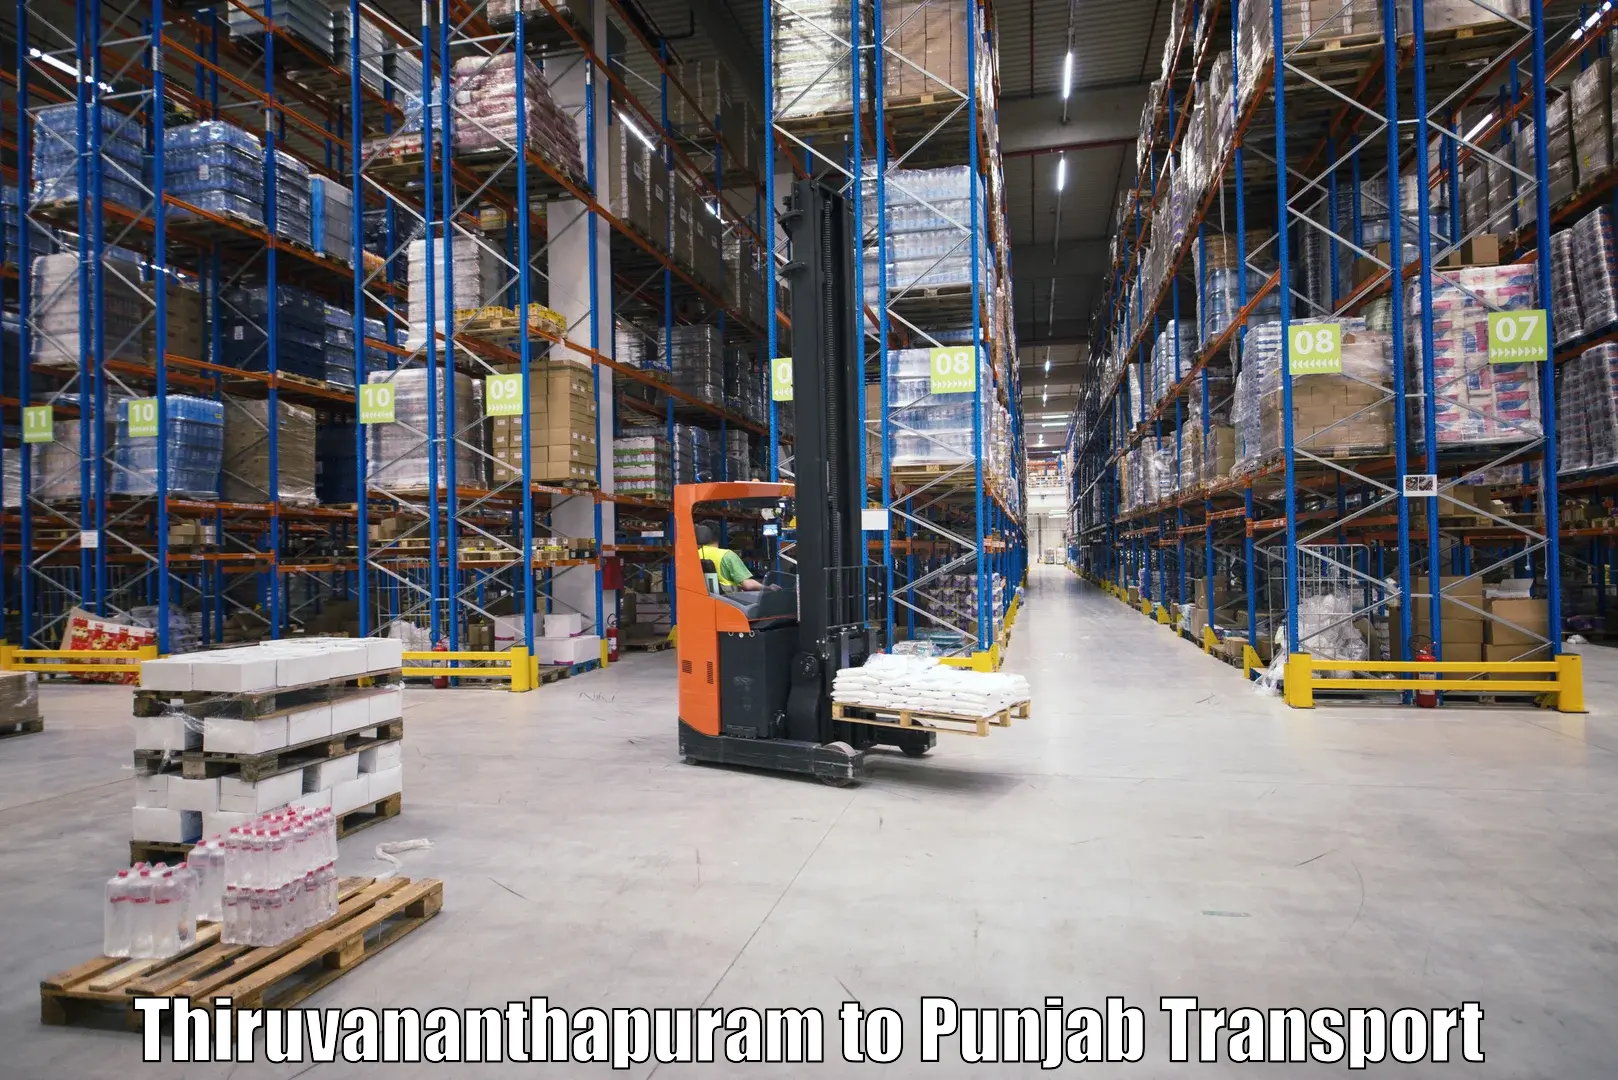 Truck transport companies in India in Thiruvananthapuram to Tarn Taran Sahib